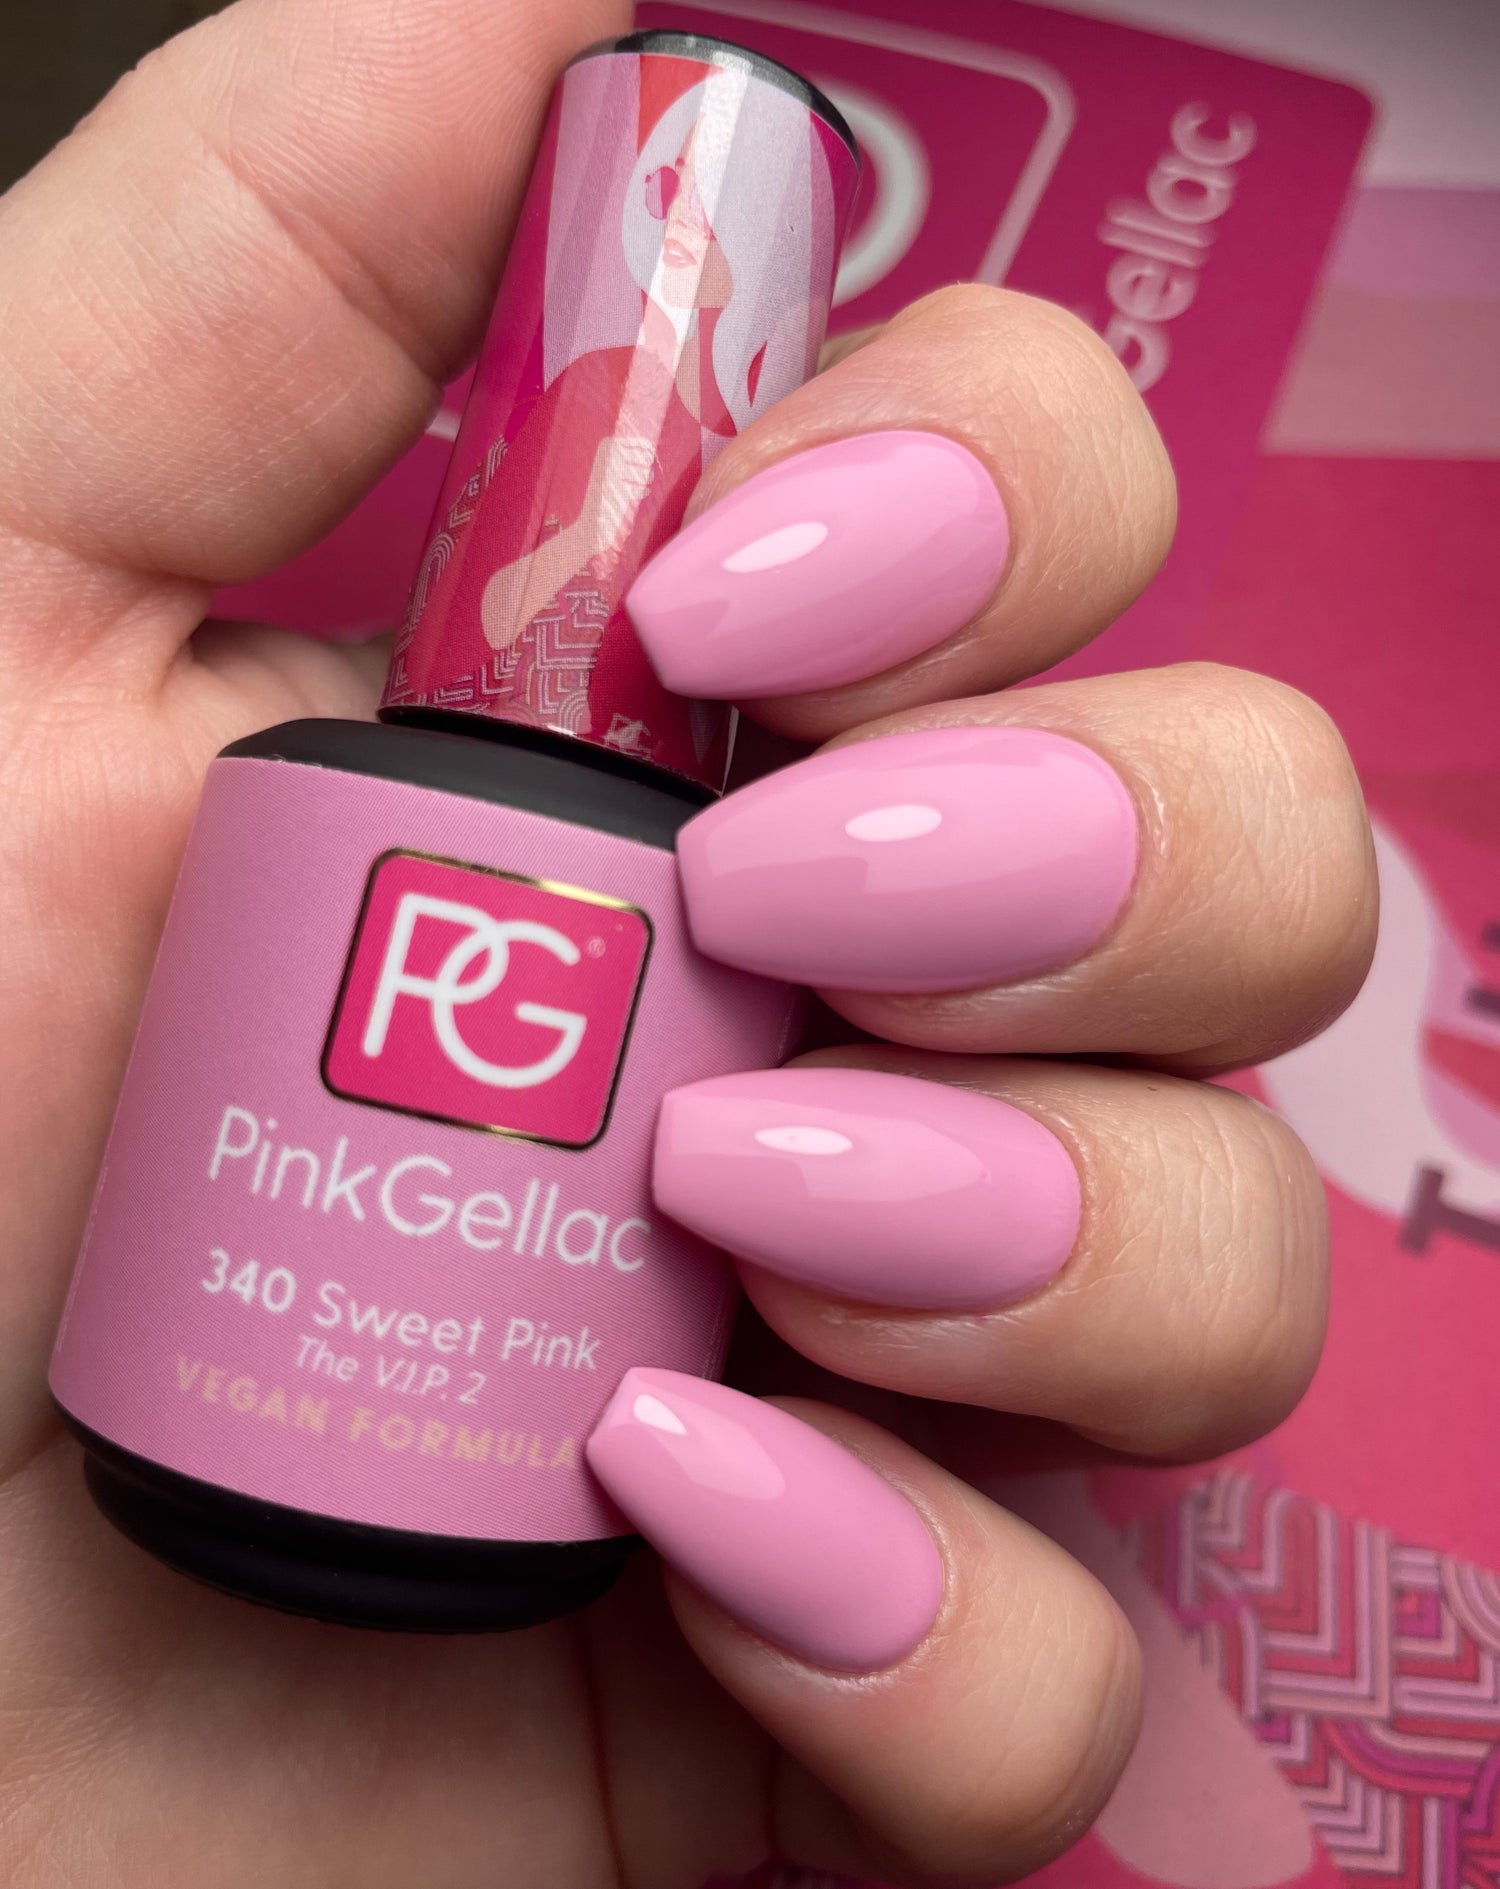 #340 Sweet Pink